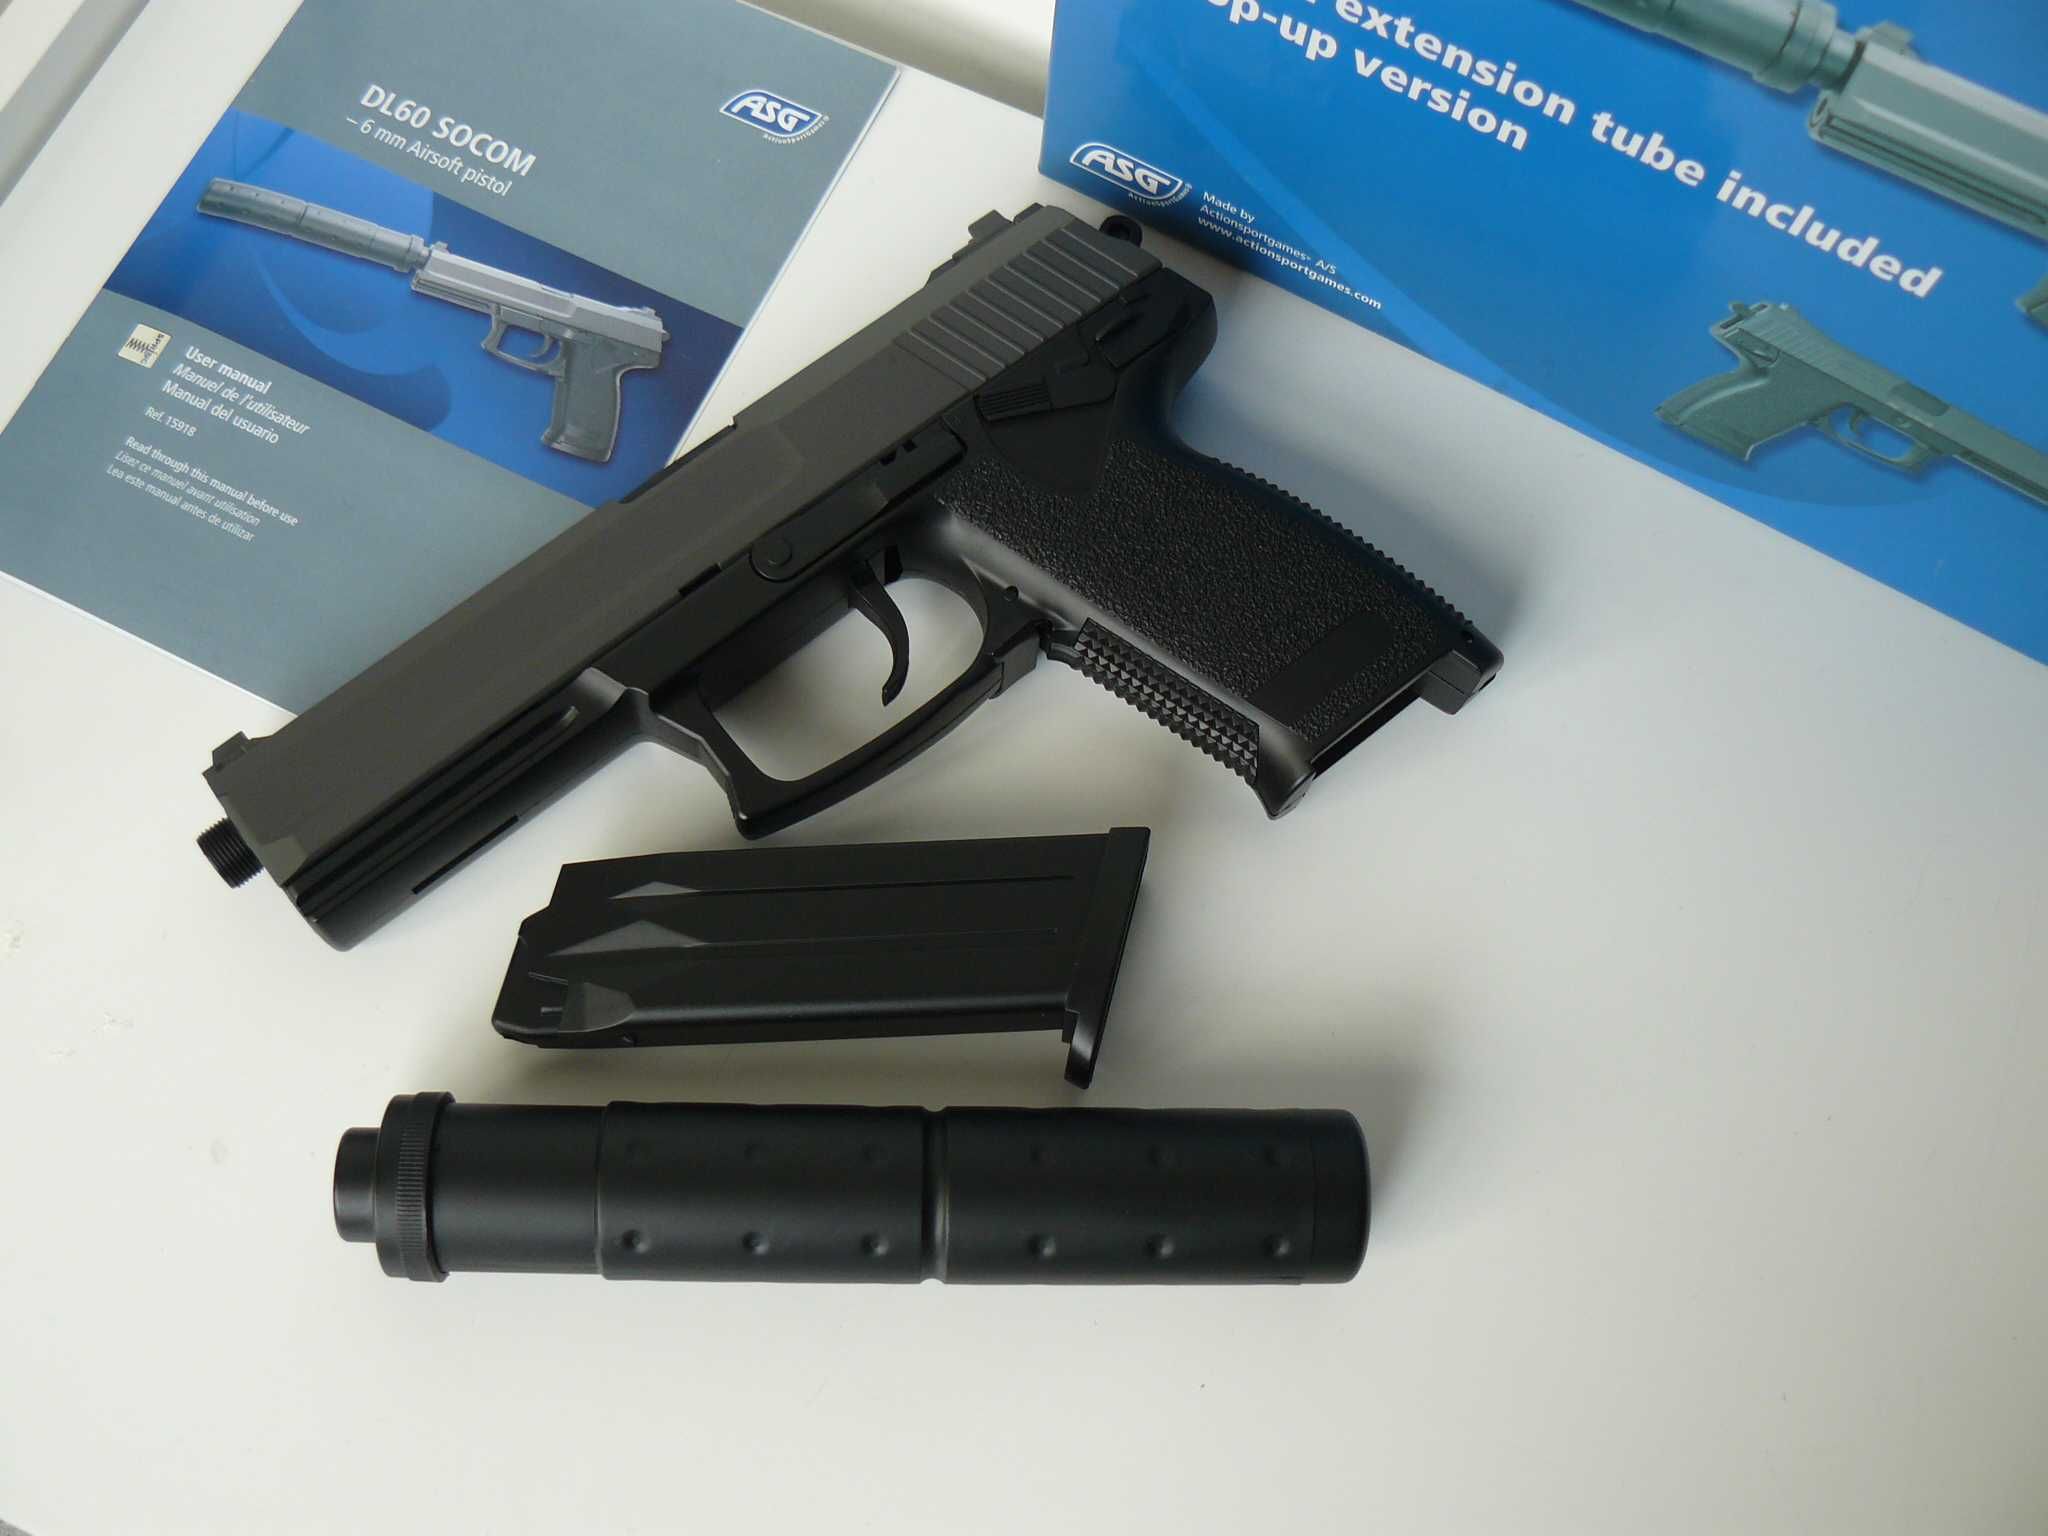 Pistol Airsoft Nou H&K ASG MK23 DL 60 SOCOM Mecanism Arc/Spring/Manual